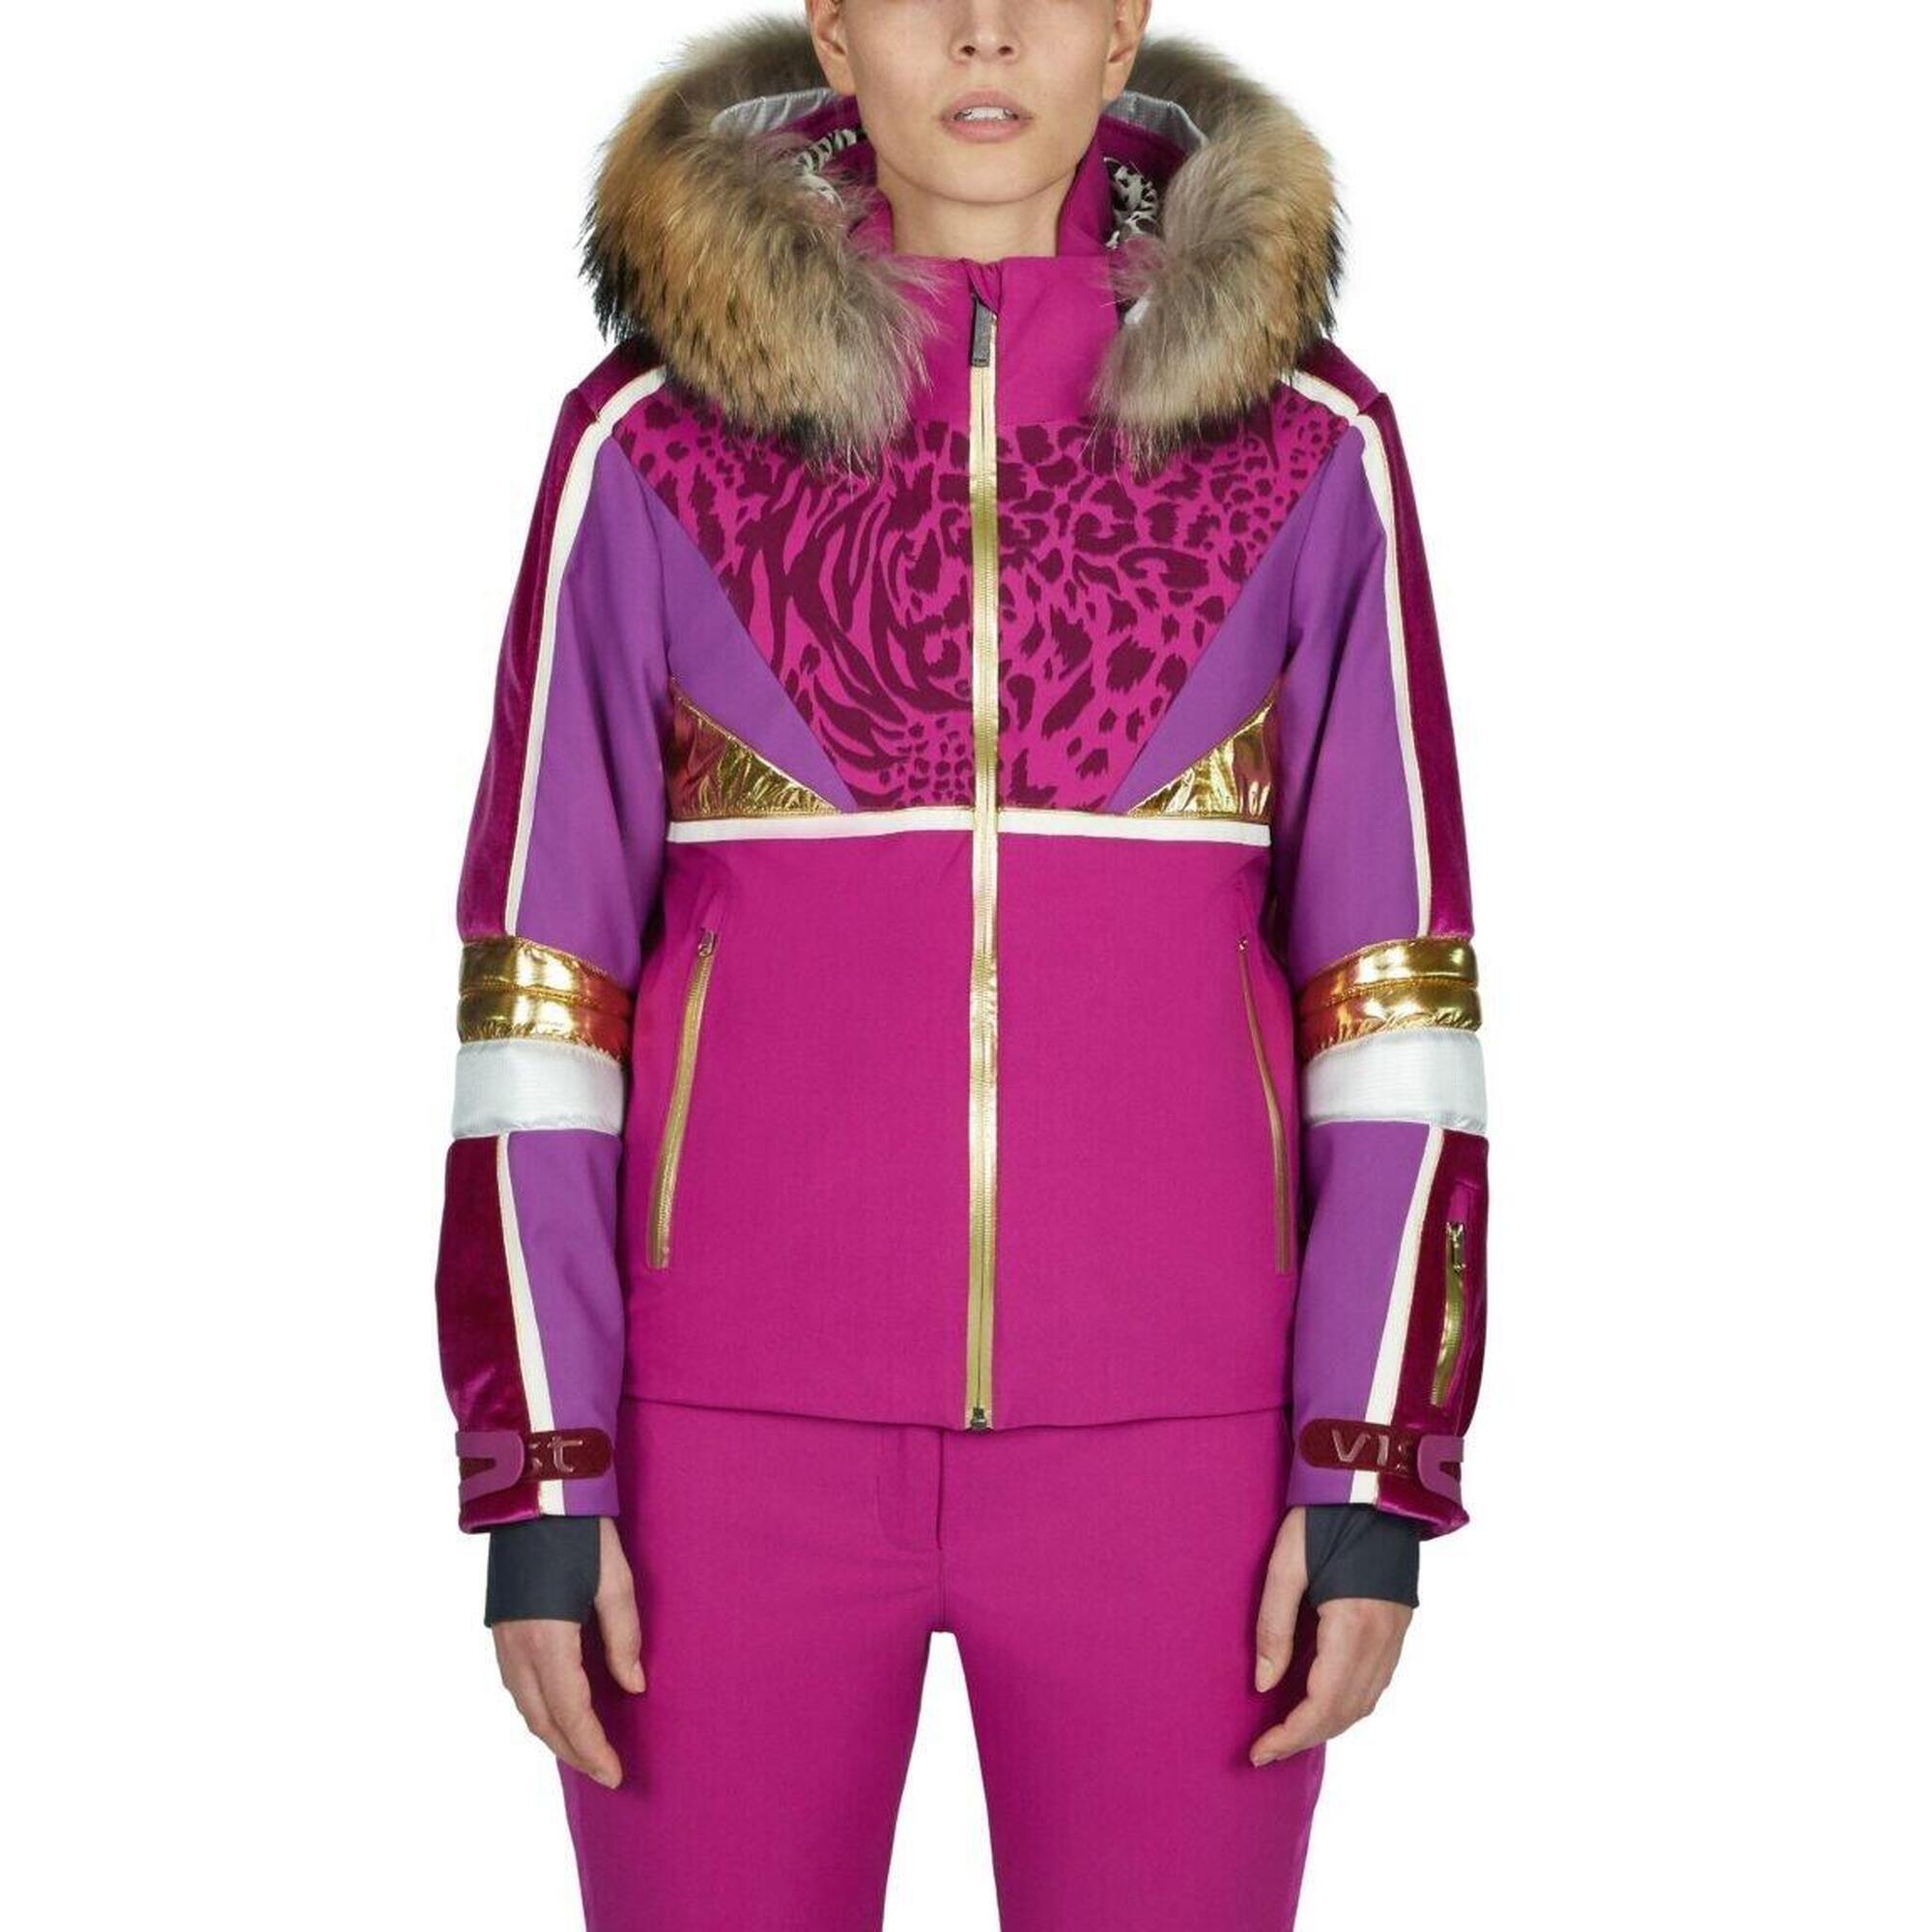 Donatella 女裝滑雪外套(沒有毛領) + Lavinia 1920 女裝滑雪褲 - 紫色/黑色